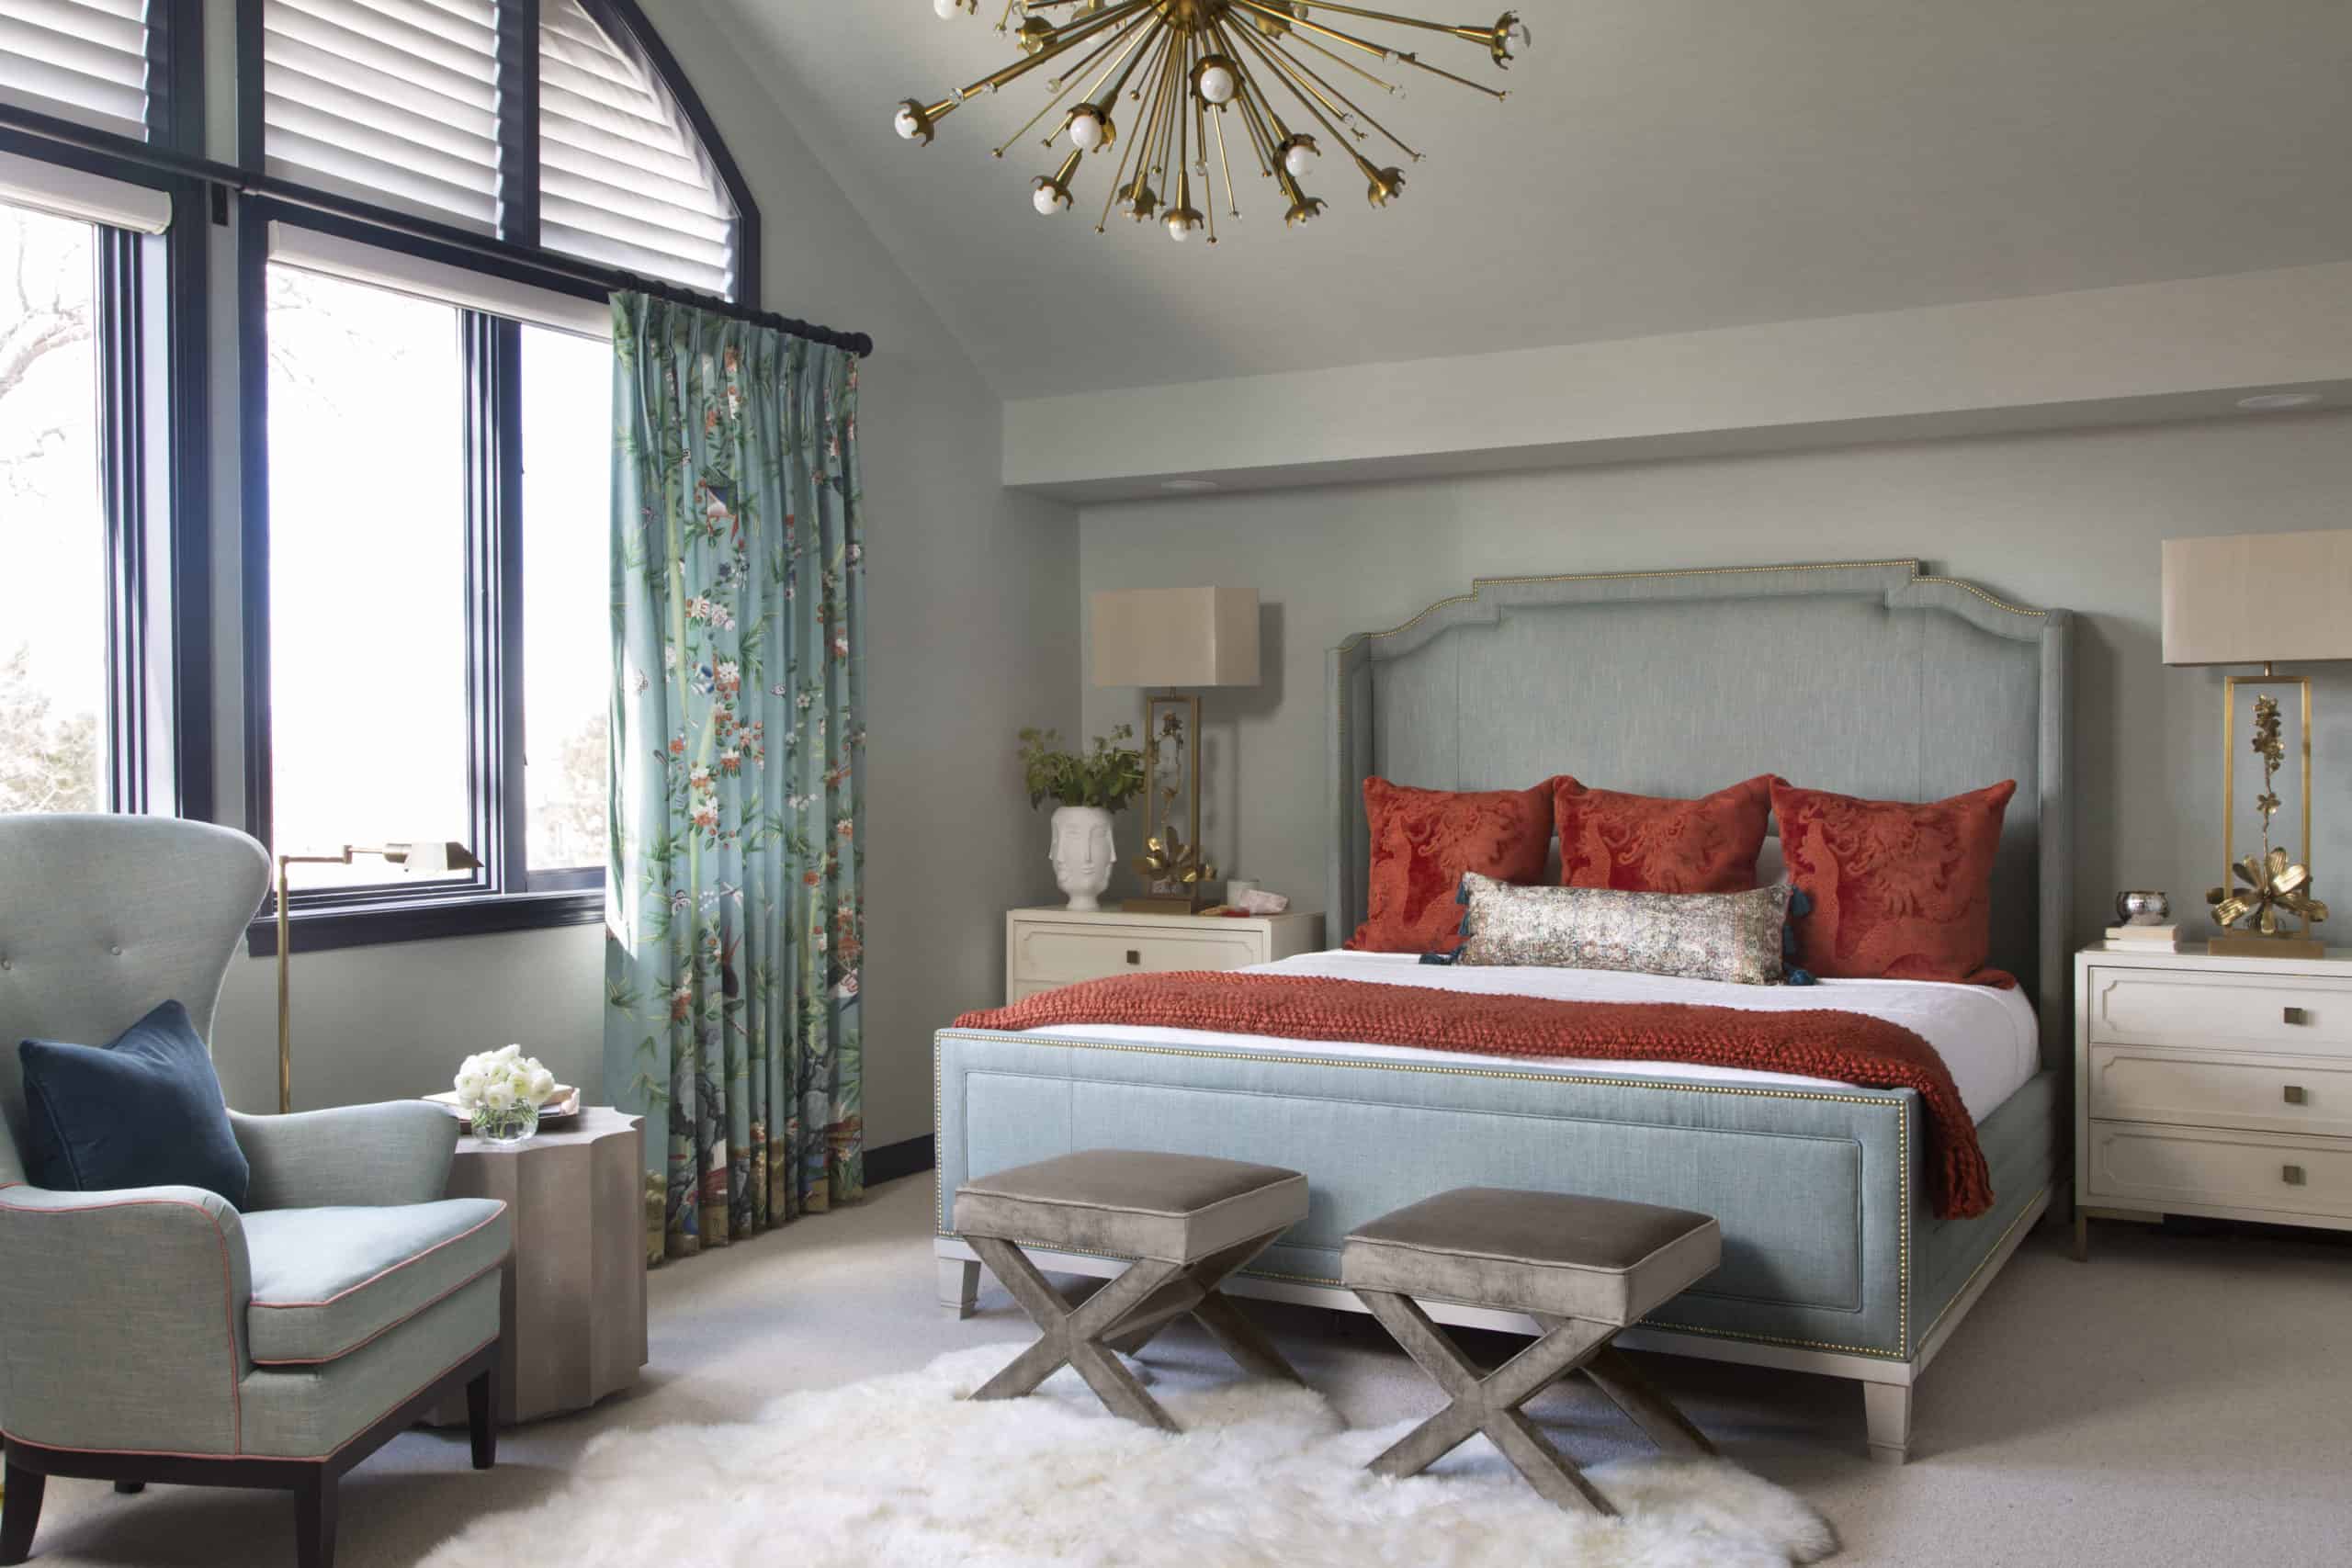 Lovely master bedroom with sputnik light fixture from interior designer denver co